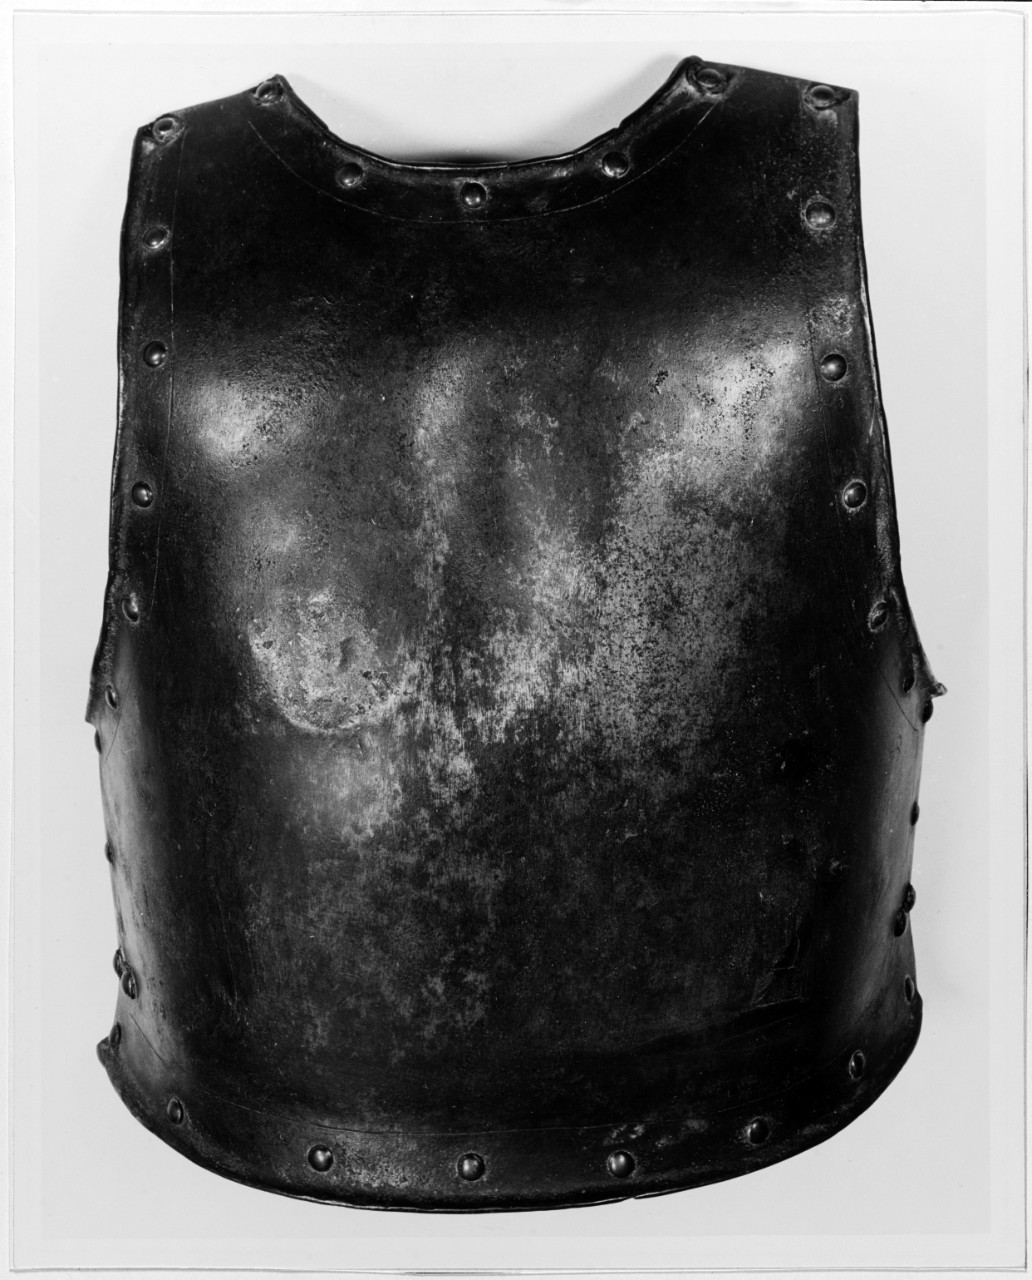 The back part of the body armor of John Paul Jones